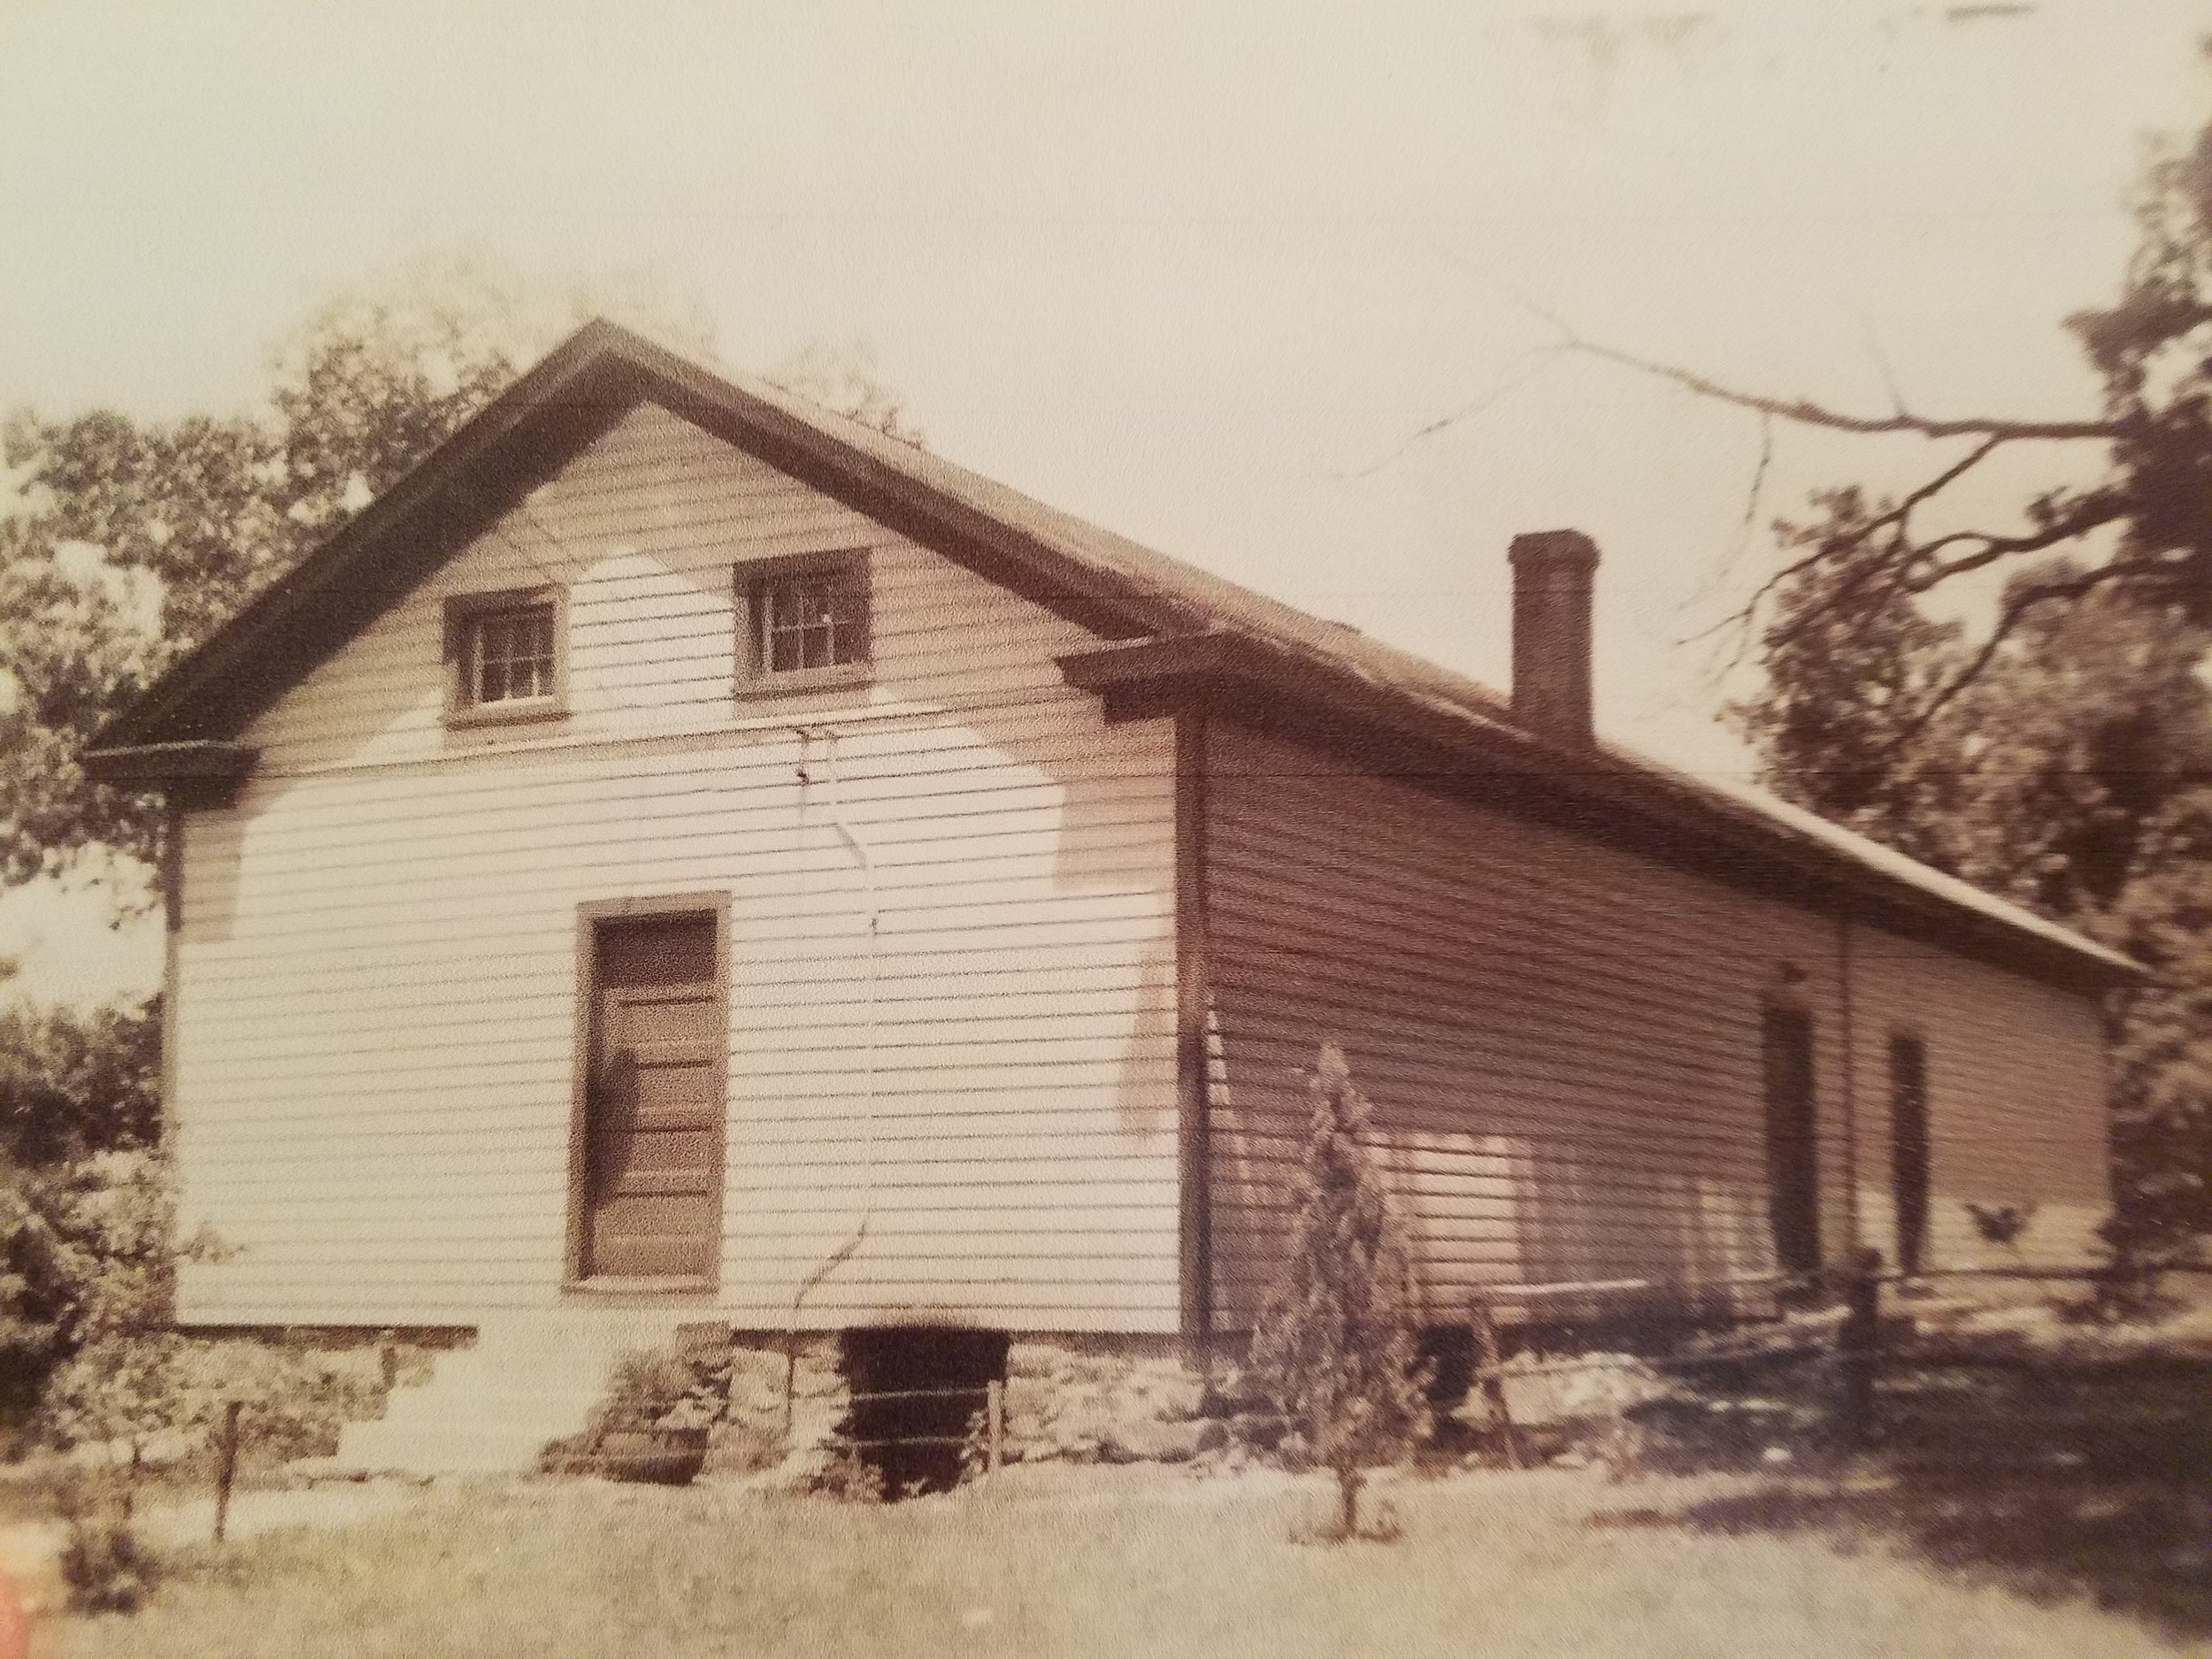  The historic Willisville Schoolhouse 